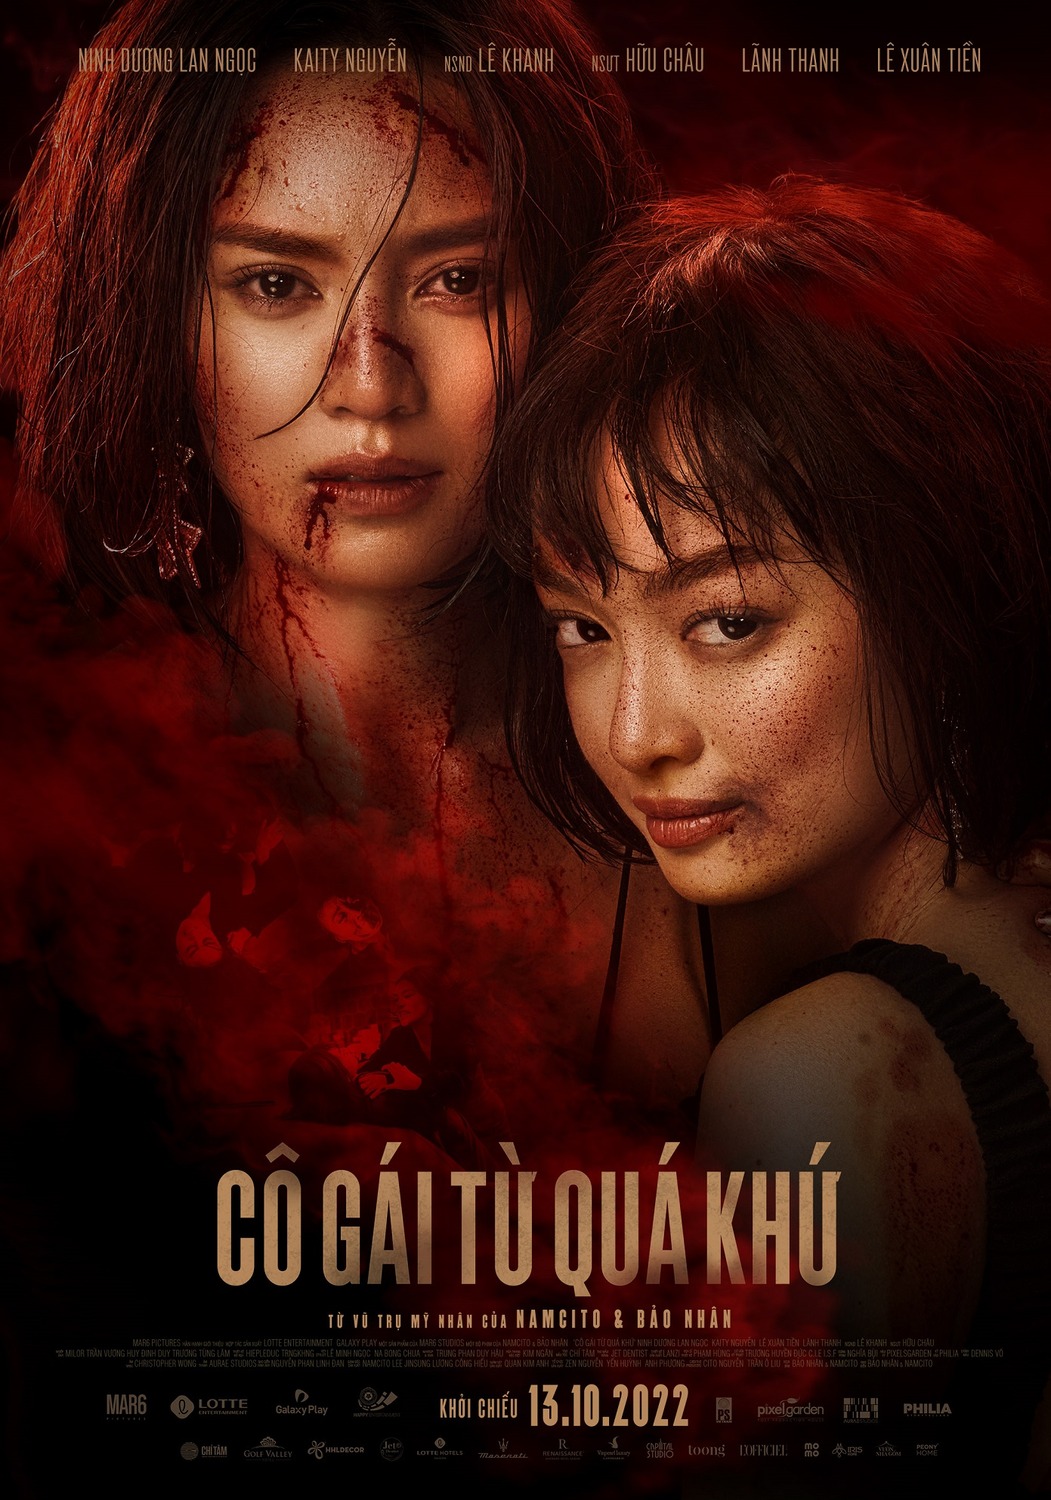 Extra Large Movie Poster Image for Cô Gái Tu Quá Khu (#3 of 3)